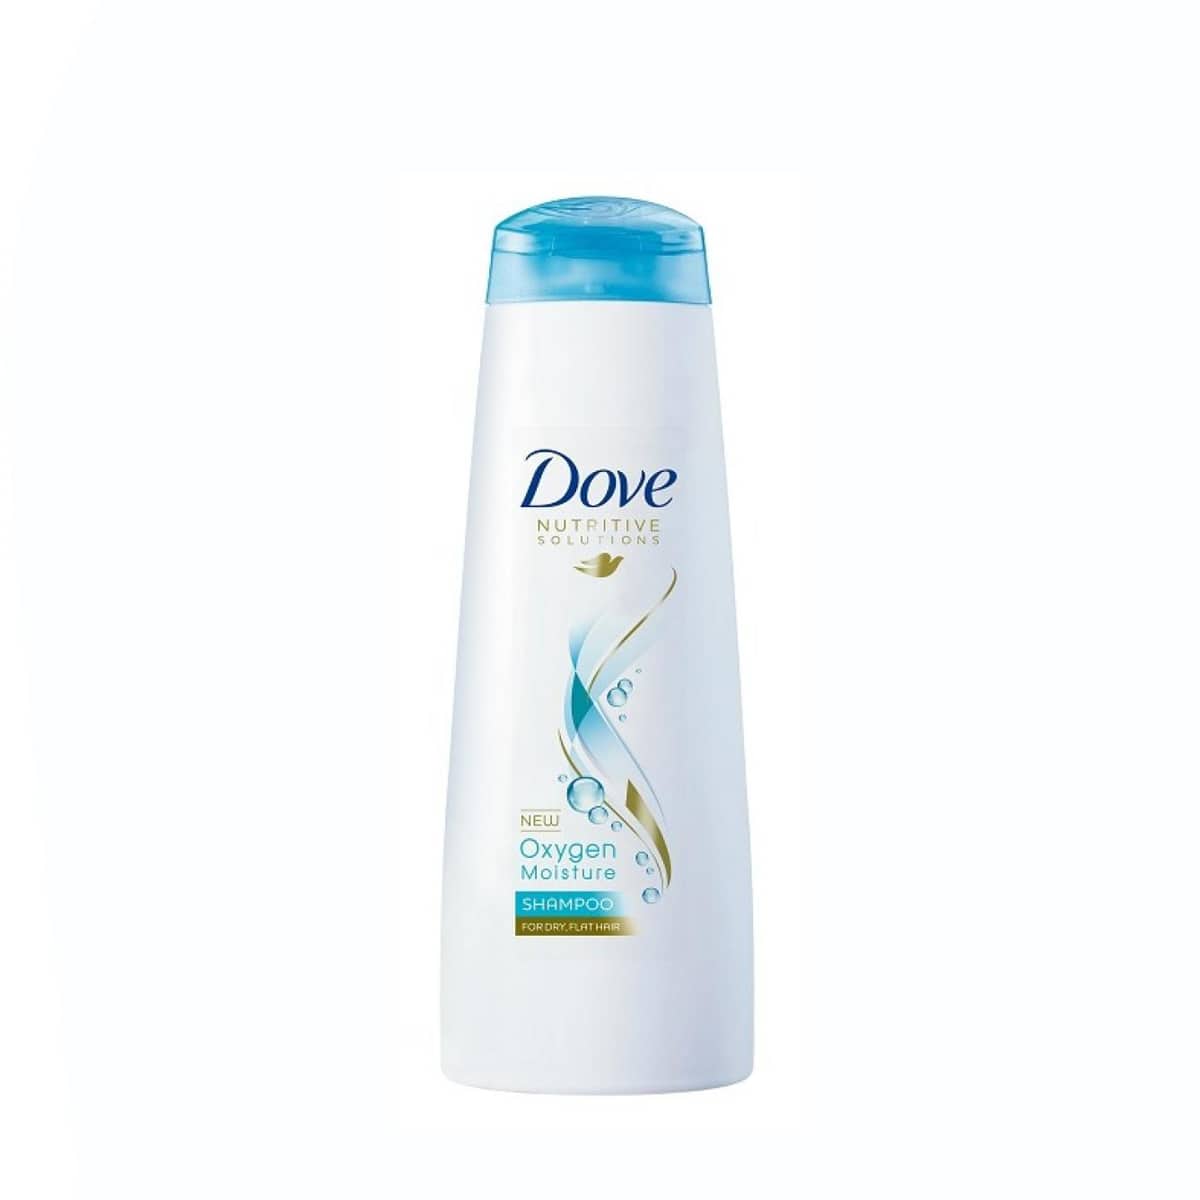 Dove Oxygen Moisture Shampoo 170ml.